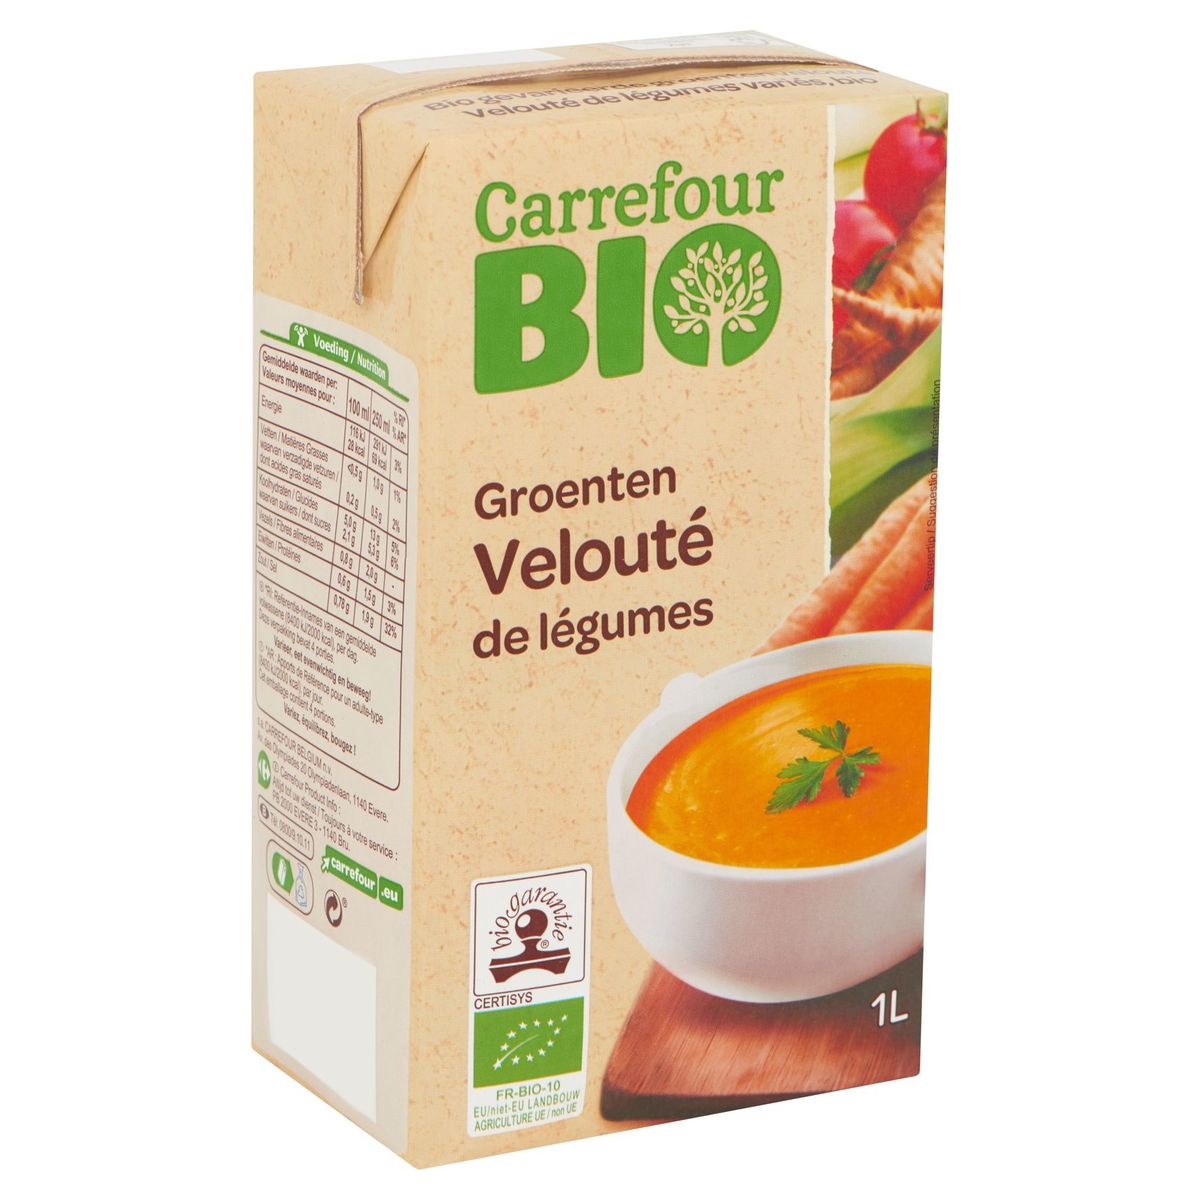 Carrefour Bio Velouté de Légumes 1 L